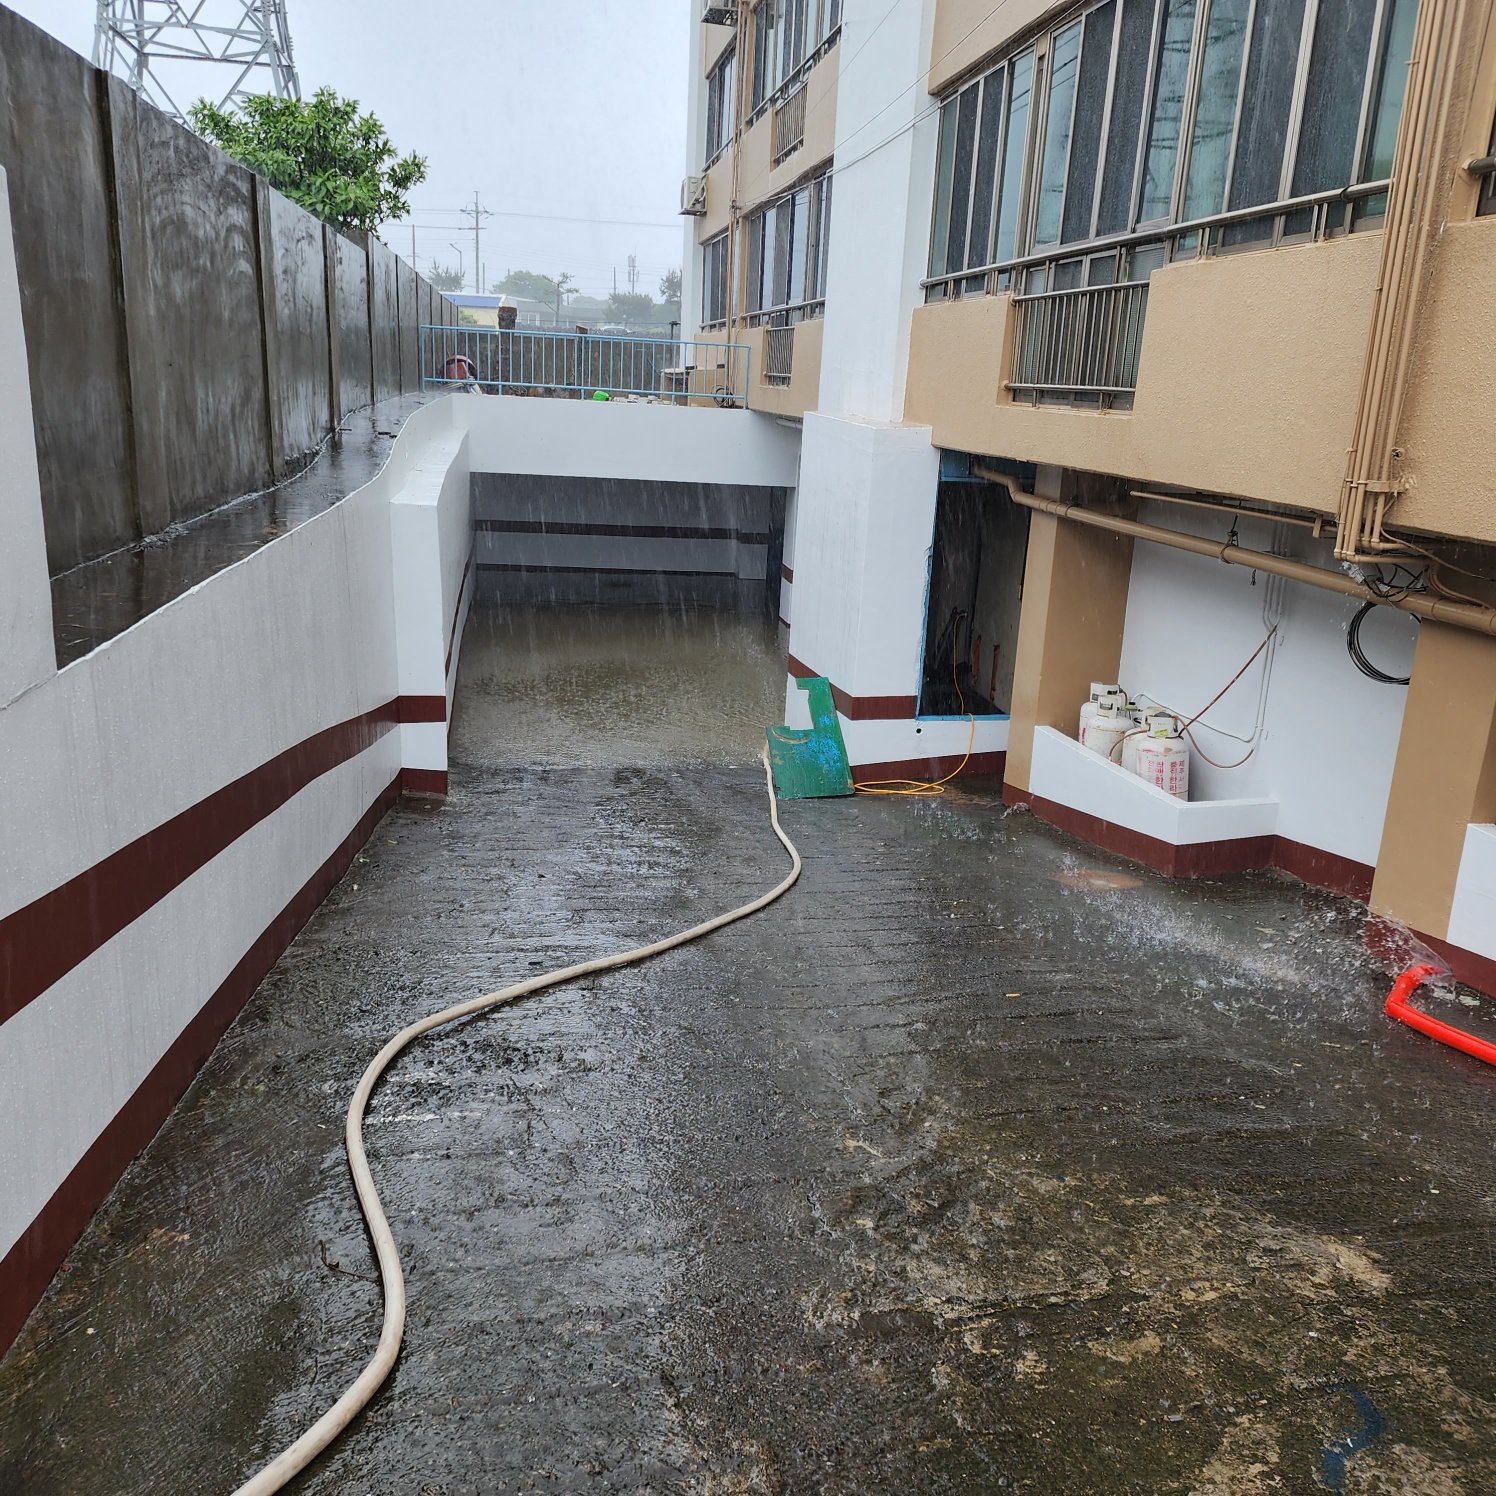 4일 오후 2시 25분쯤 서귀포시 대정읍 하모리의 한 건물 지하가 침수돼, 소방당국이 출동해 배수 작업을 하고 있다. 제주도소방안전본부 제공